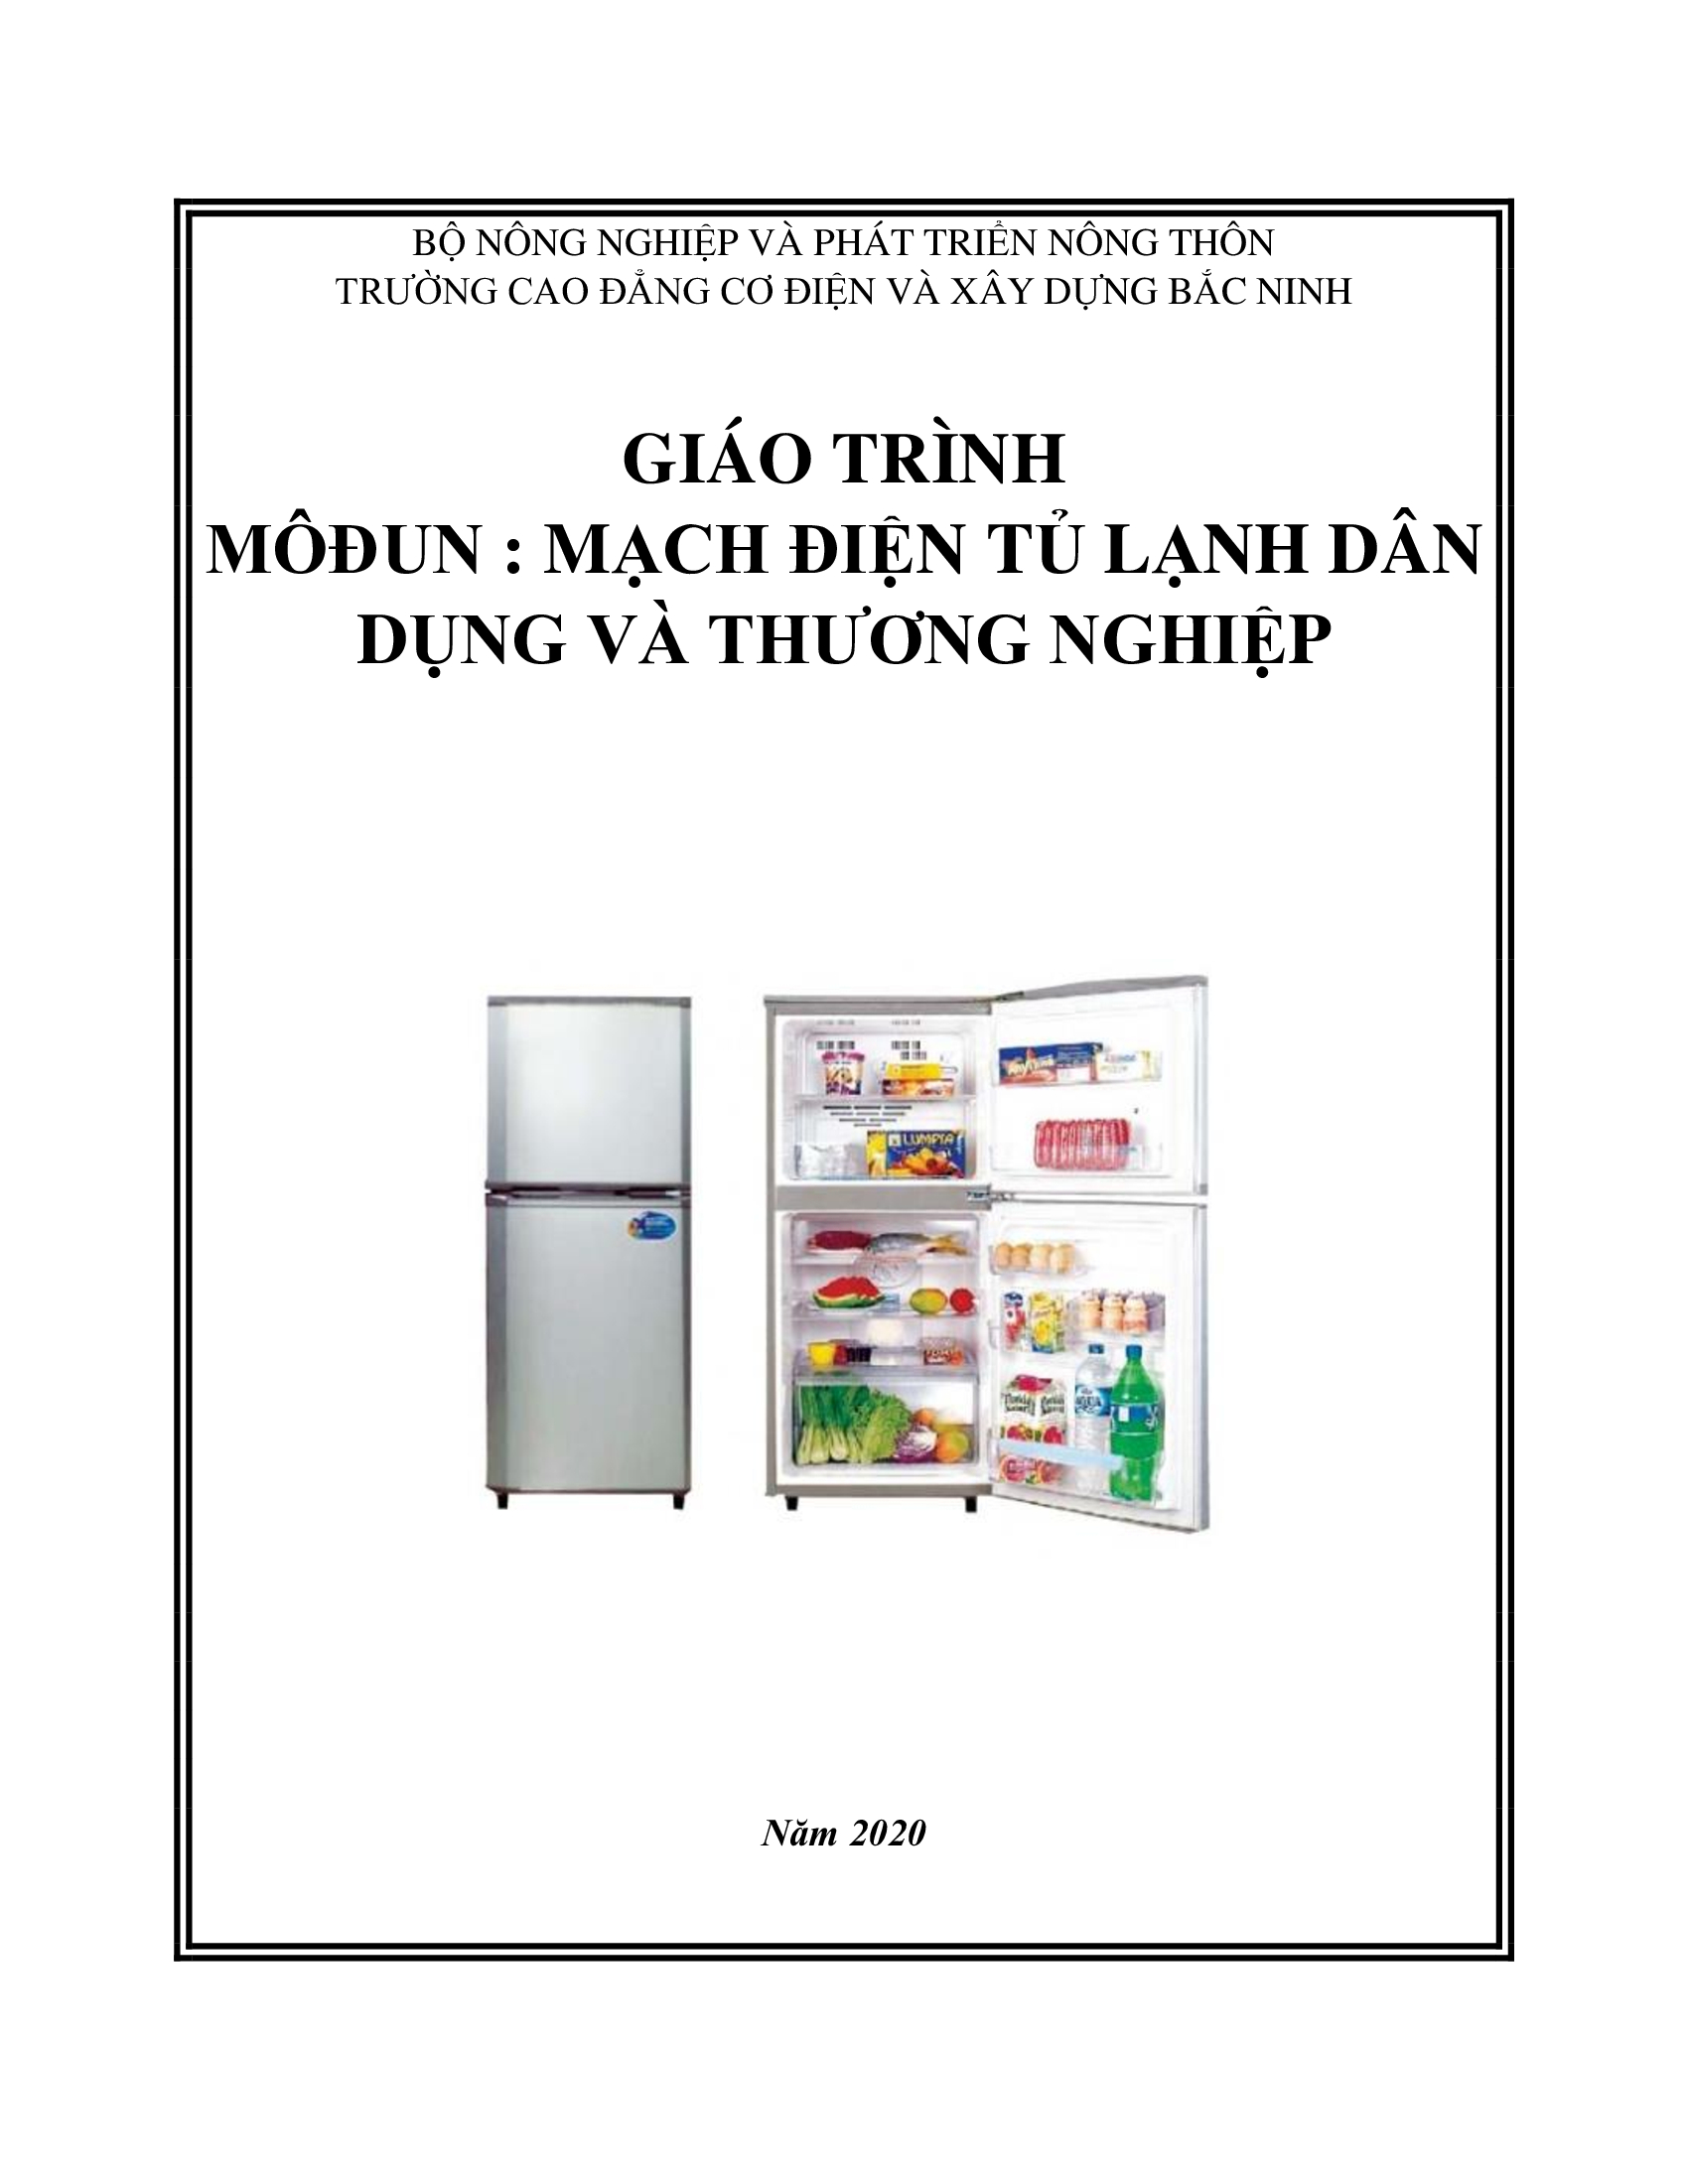 Giáo trình mạch điện tủ lạnh dân dụng và thương nghiệp